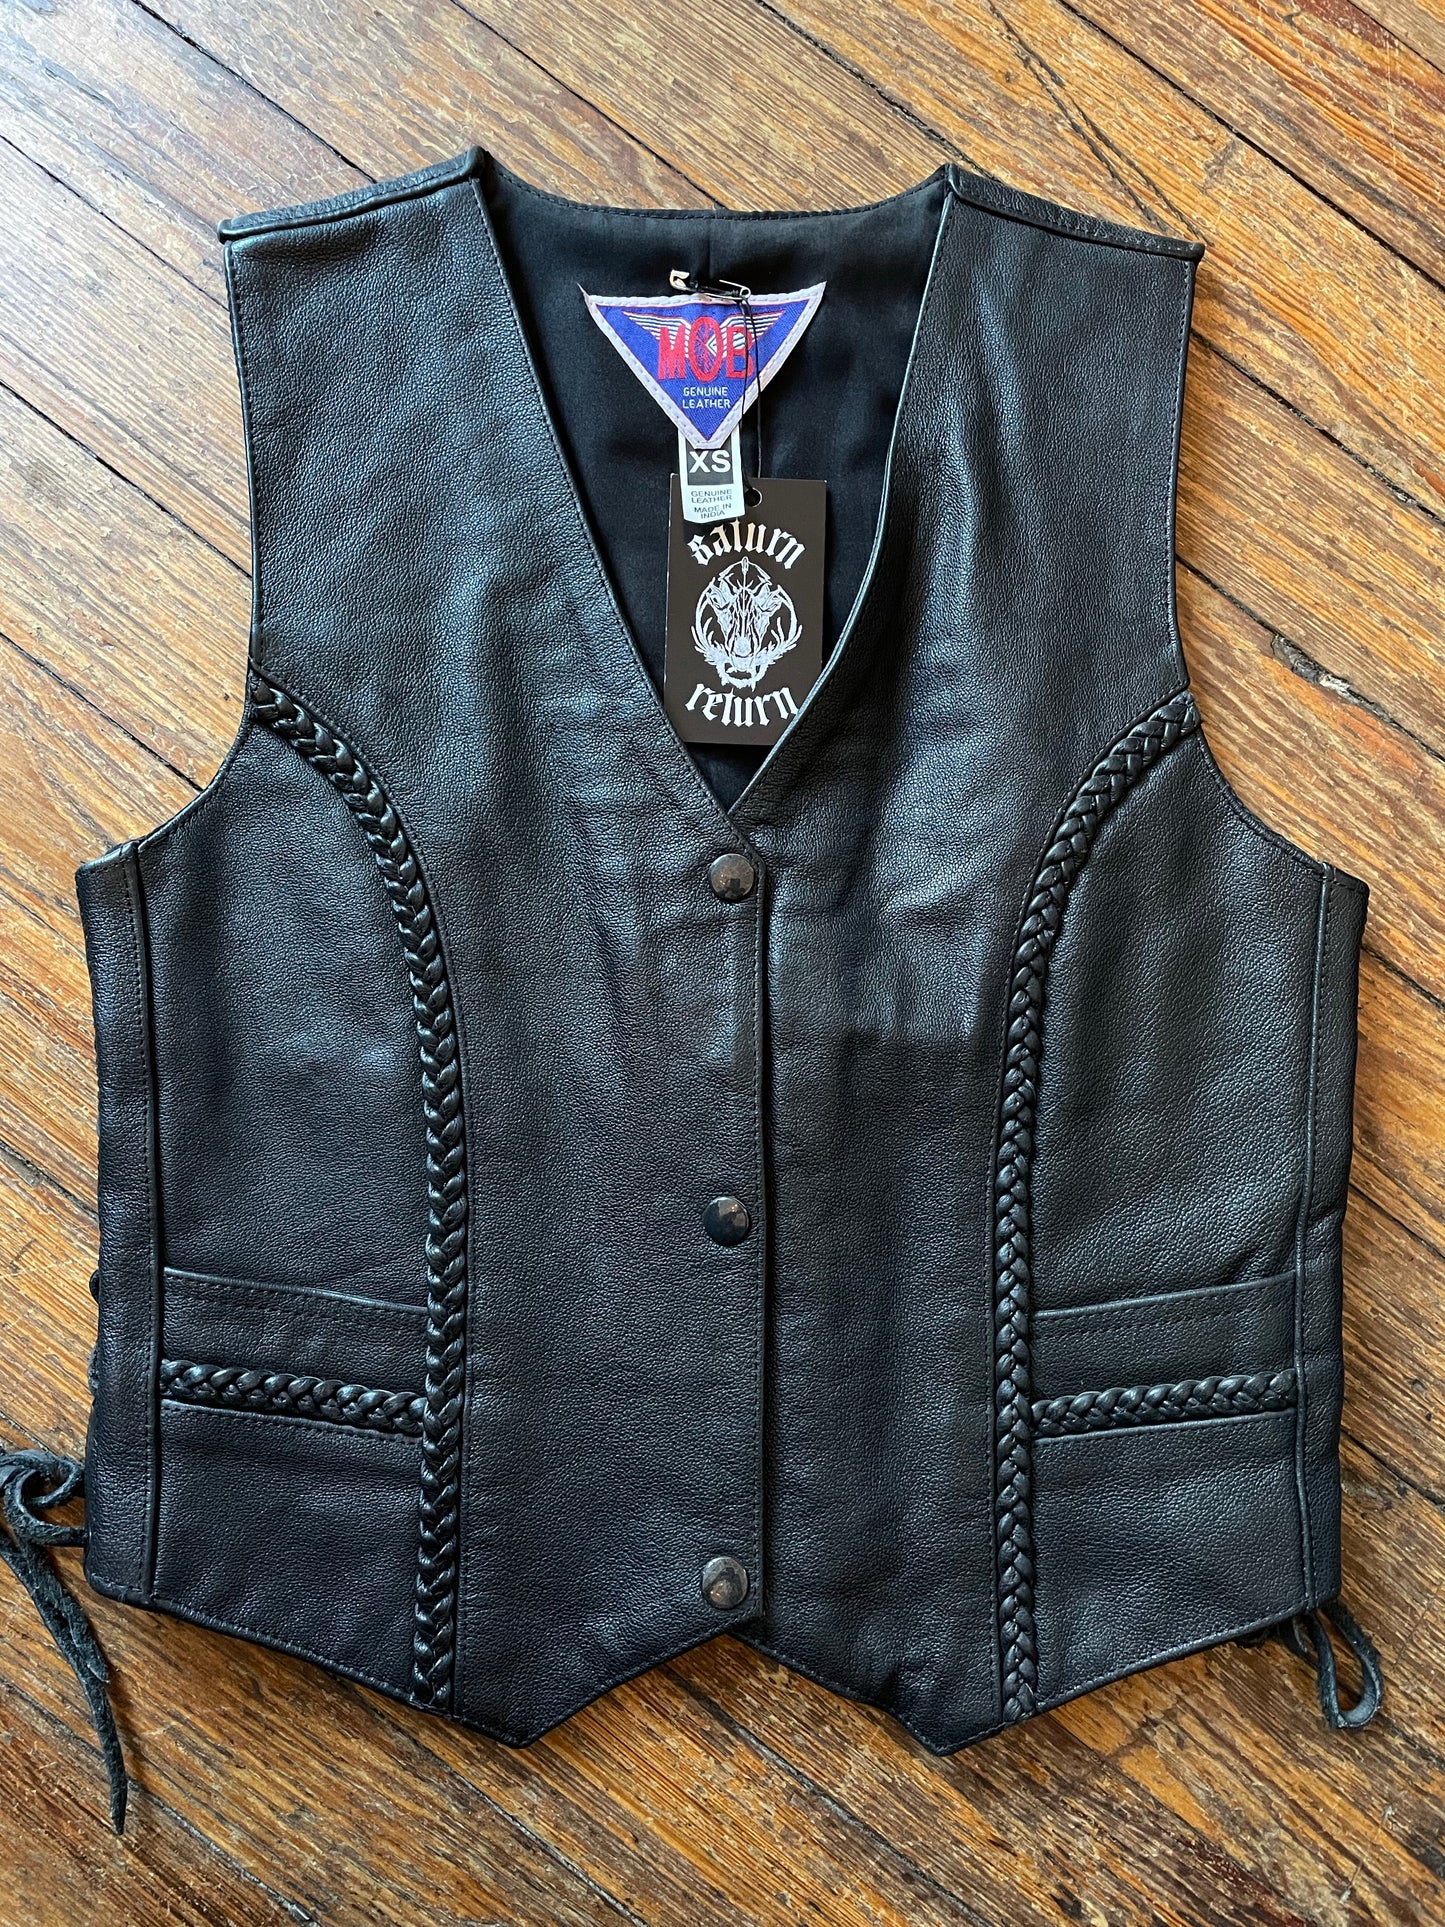 Pre-Loved MOB Black Leather Biker Vest